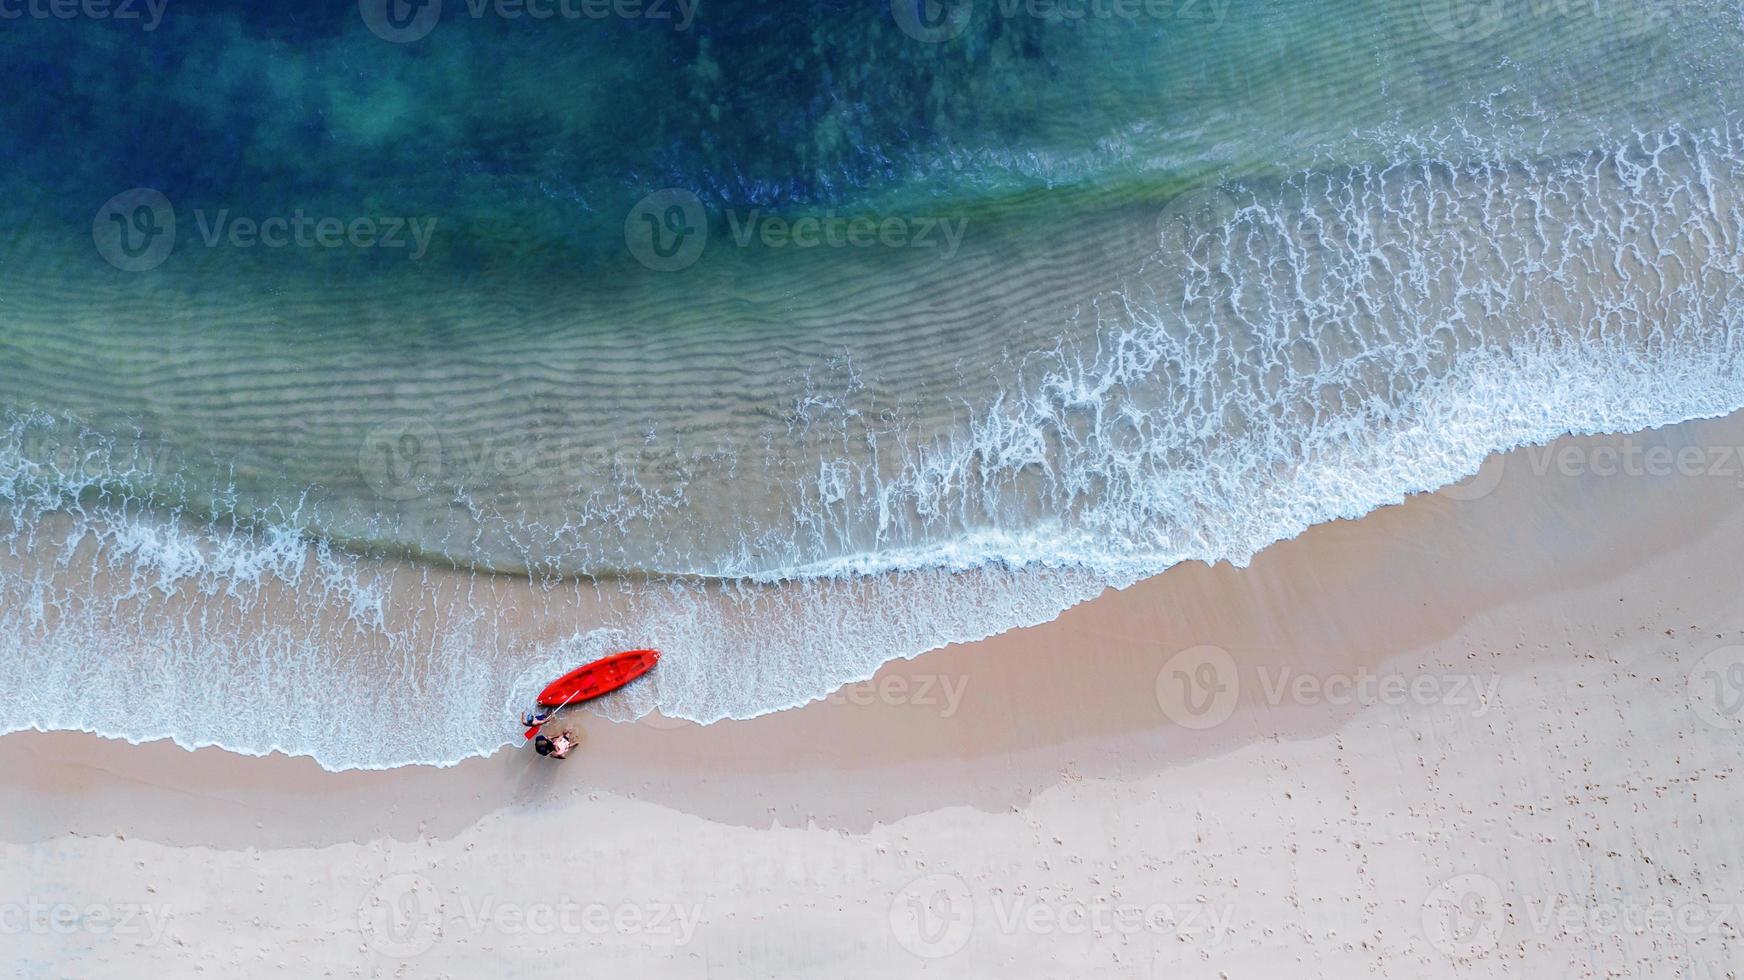 Vista aérea superior de kayak alrededor del mar con sombra de agua azul esmeralda y espuma de olas foto